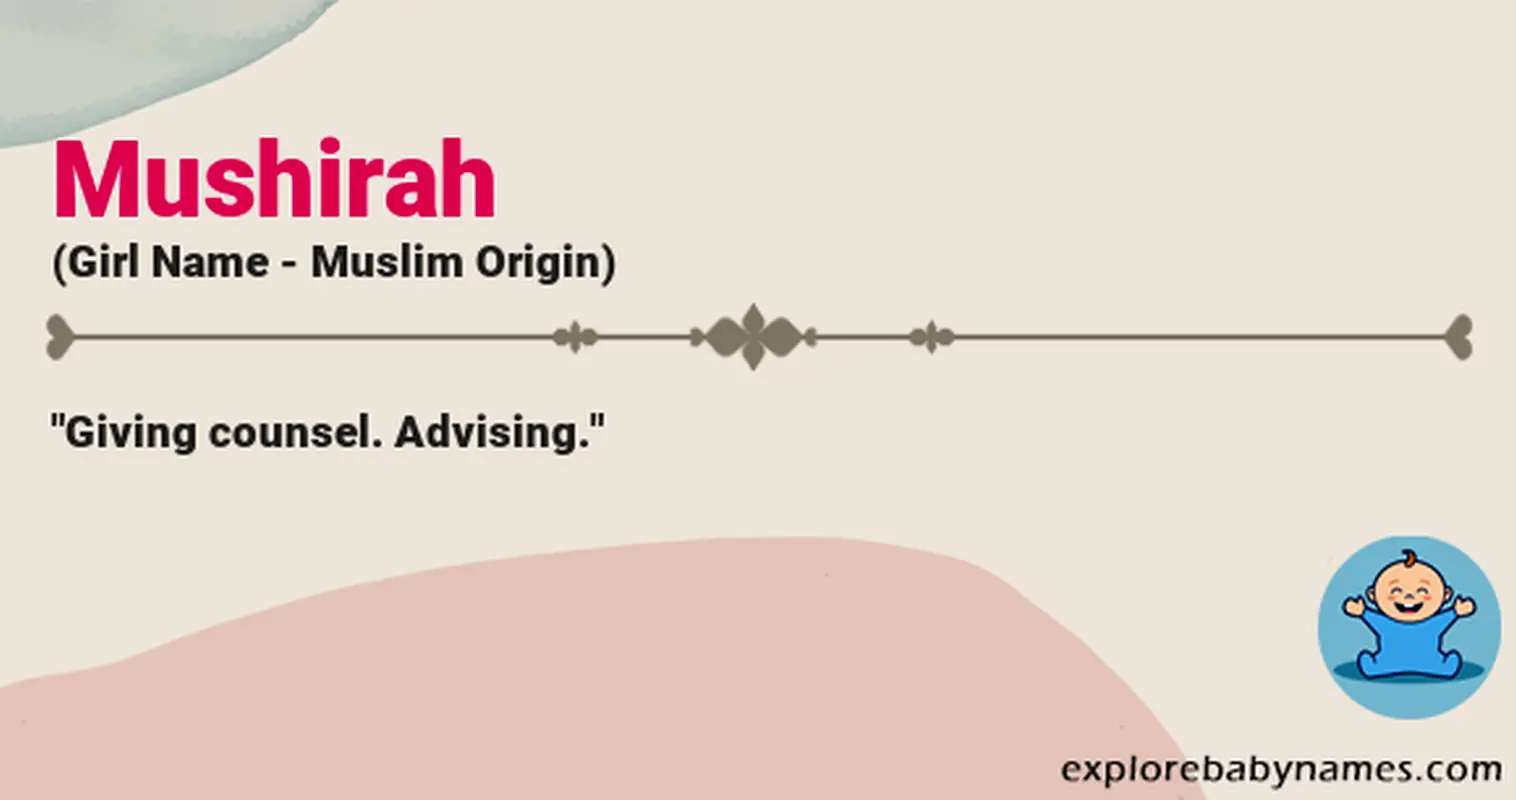 Meaning of Mushirah